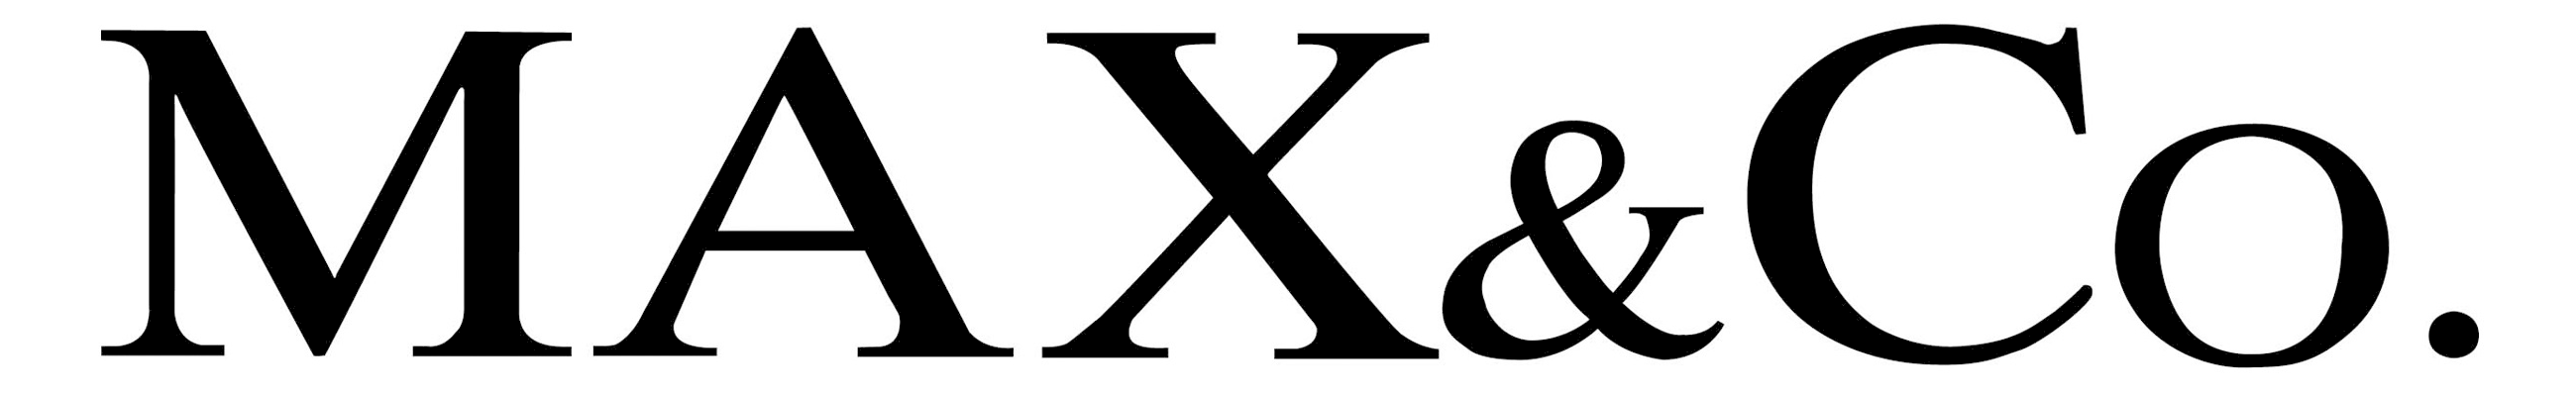 Max Co logo